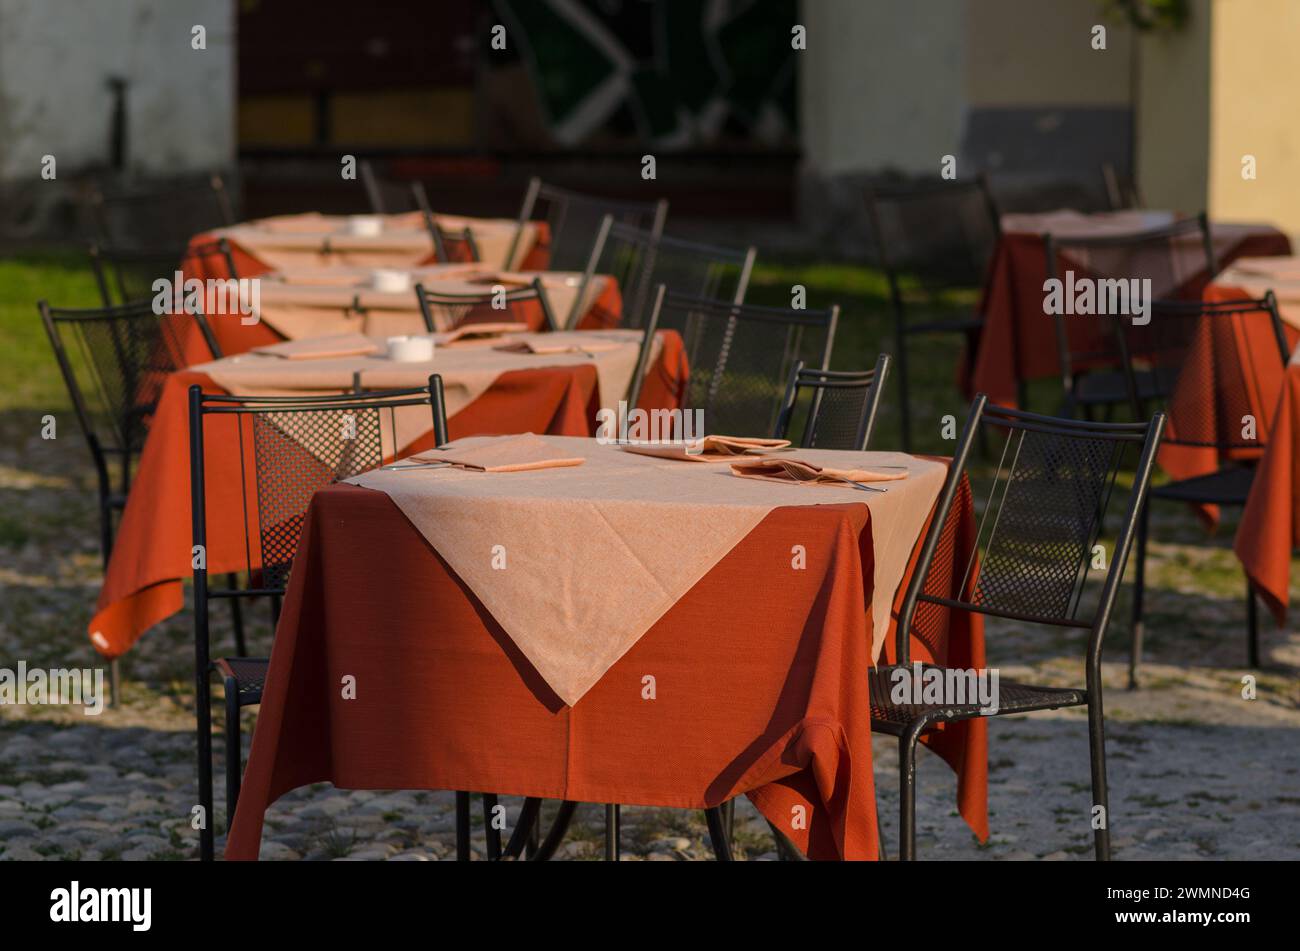 tavoli di un ristorante all'aperto nella piazza di un luogo turistico, un tavolo ben preparato con tovaglie colorate, durante le vacanze e le vacanze più touri Foto Stock